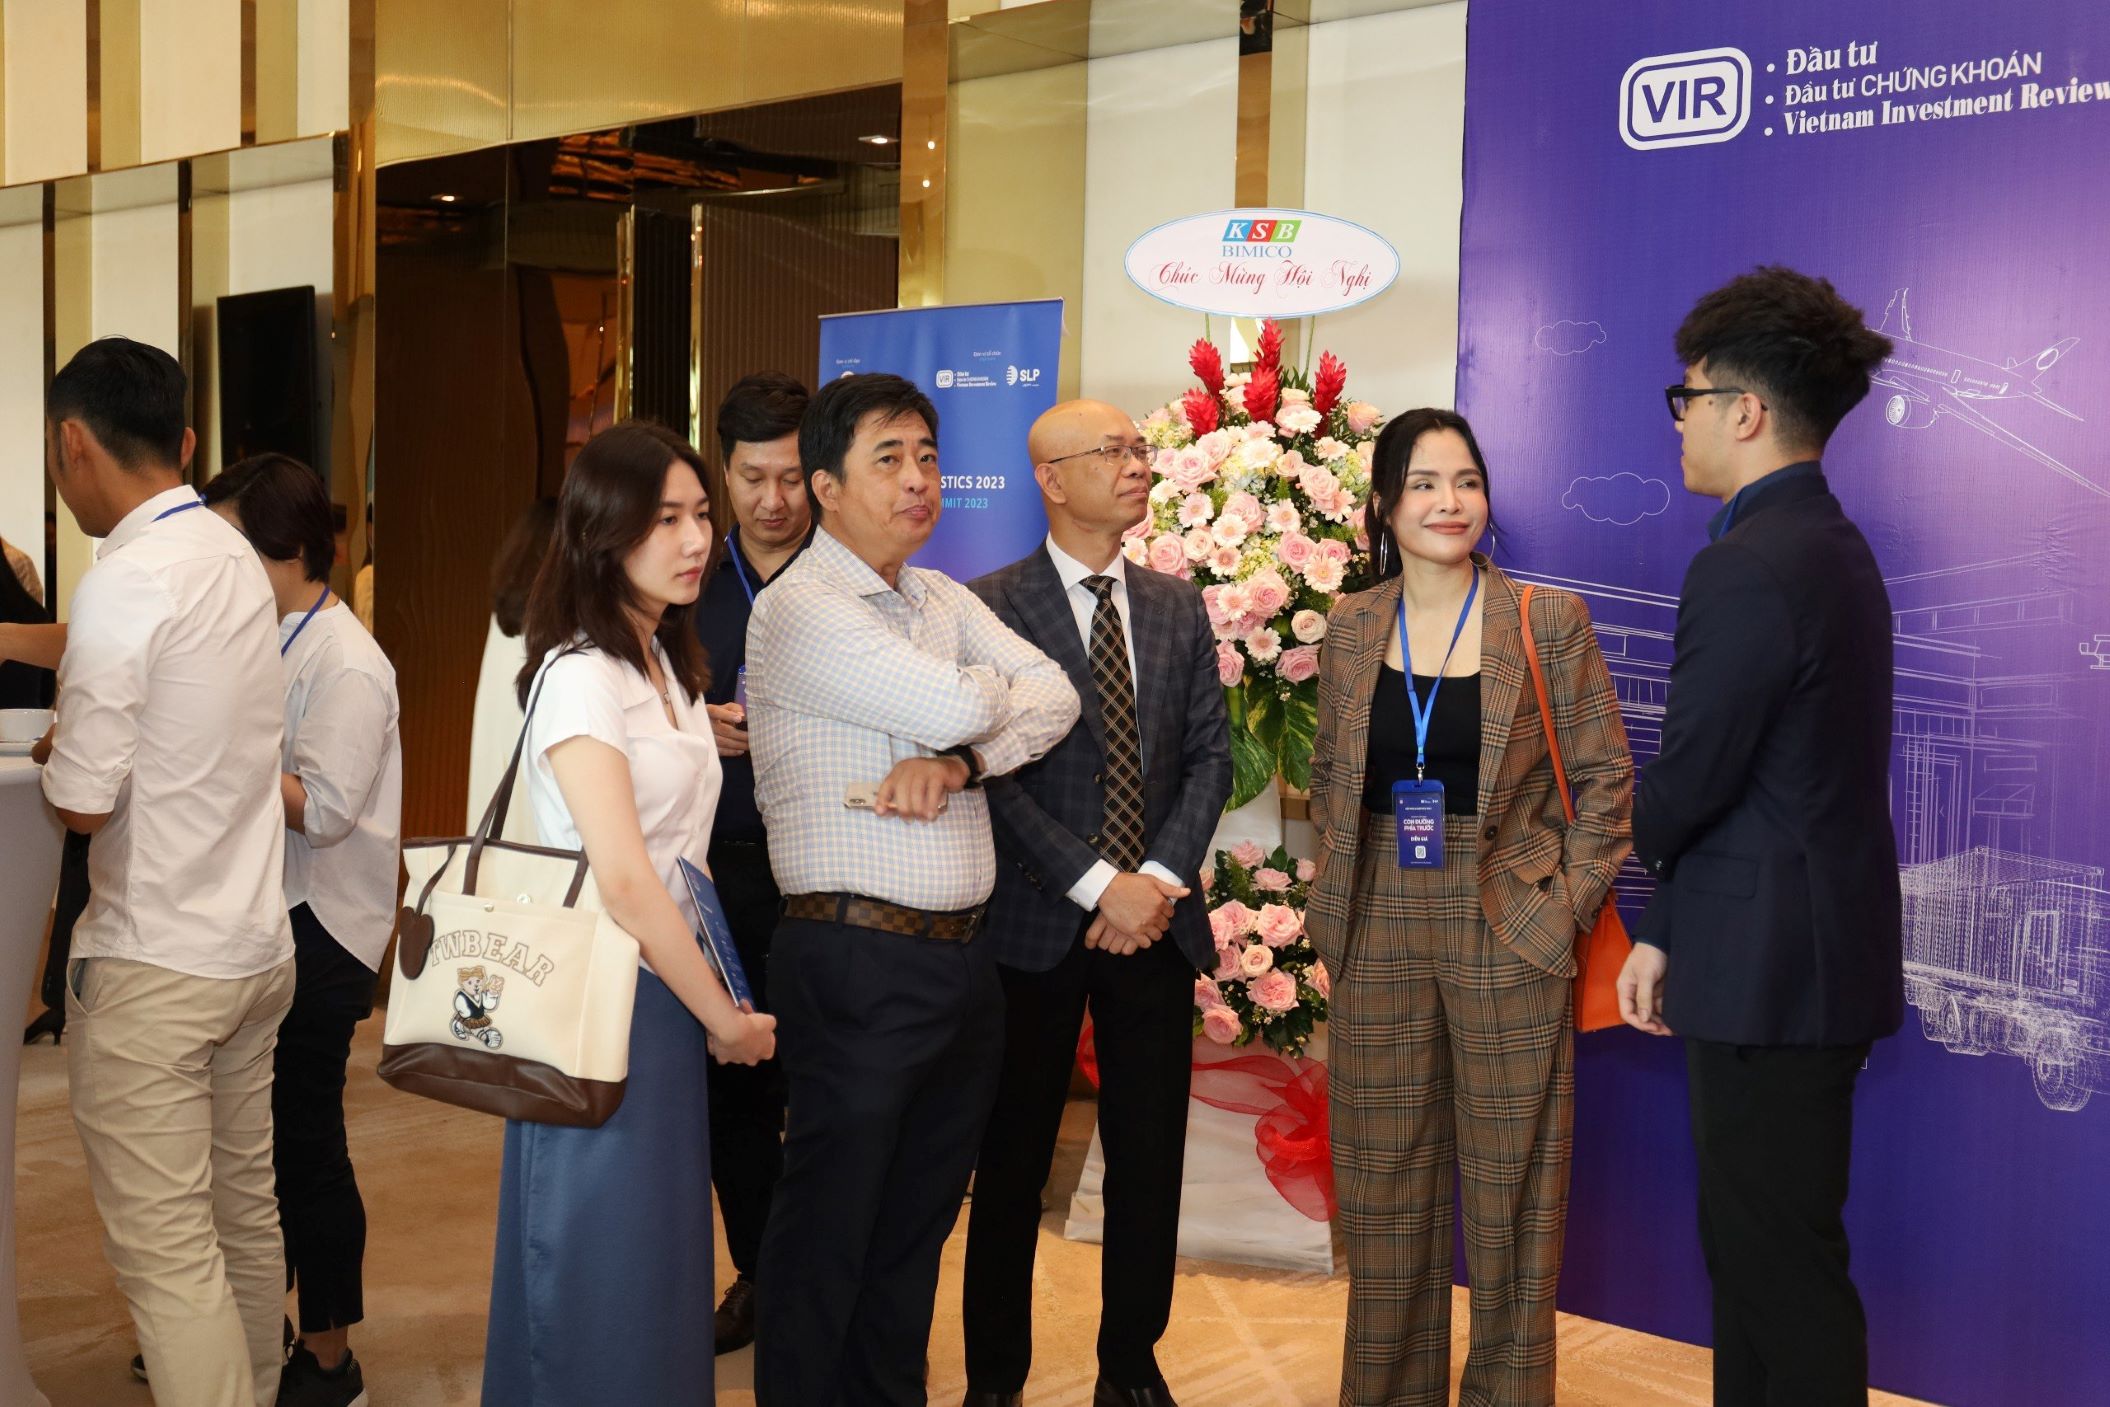 Sự kiện là cơ hội để gặp gỡ, tiếp cận và trao đổi với các doanh nghiệp Logistics hàng đầu tại Việt Nam như SLP, Western Pacific, TTC,...